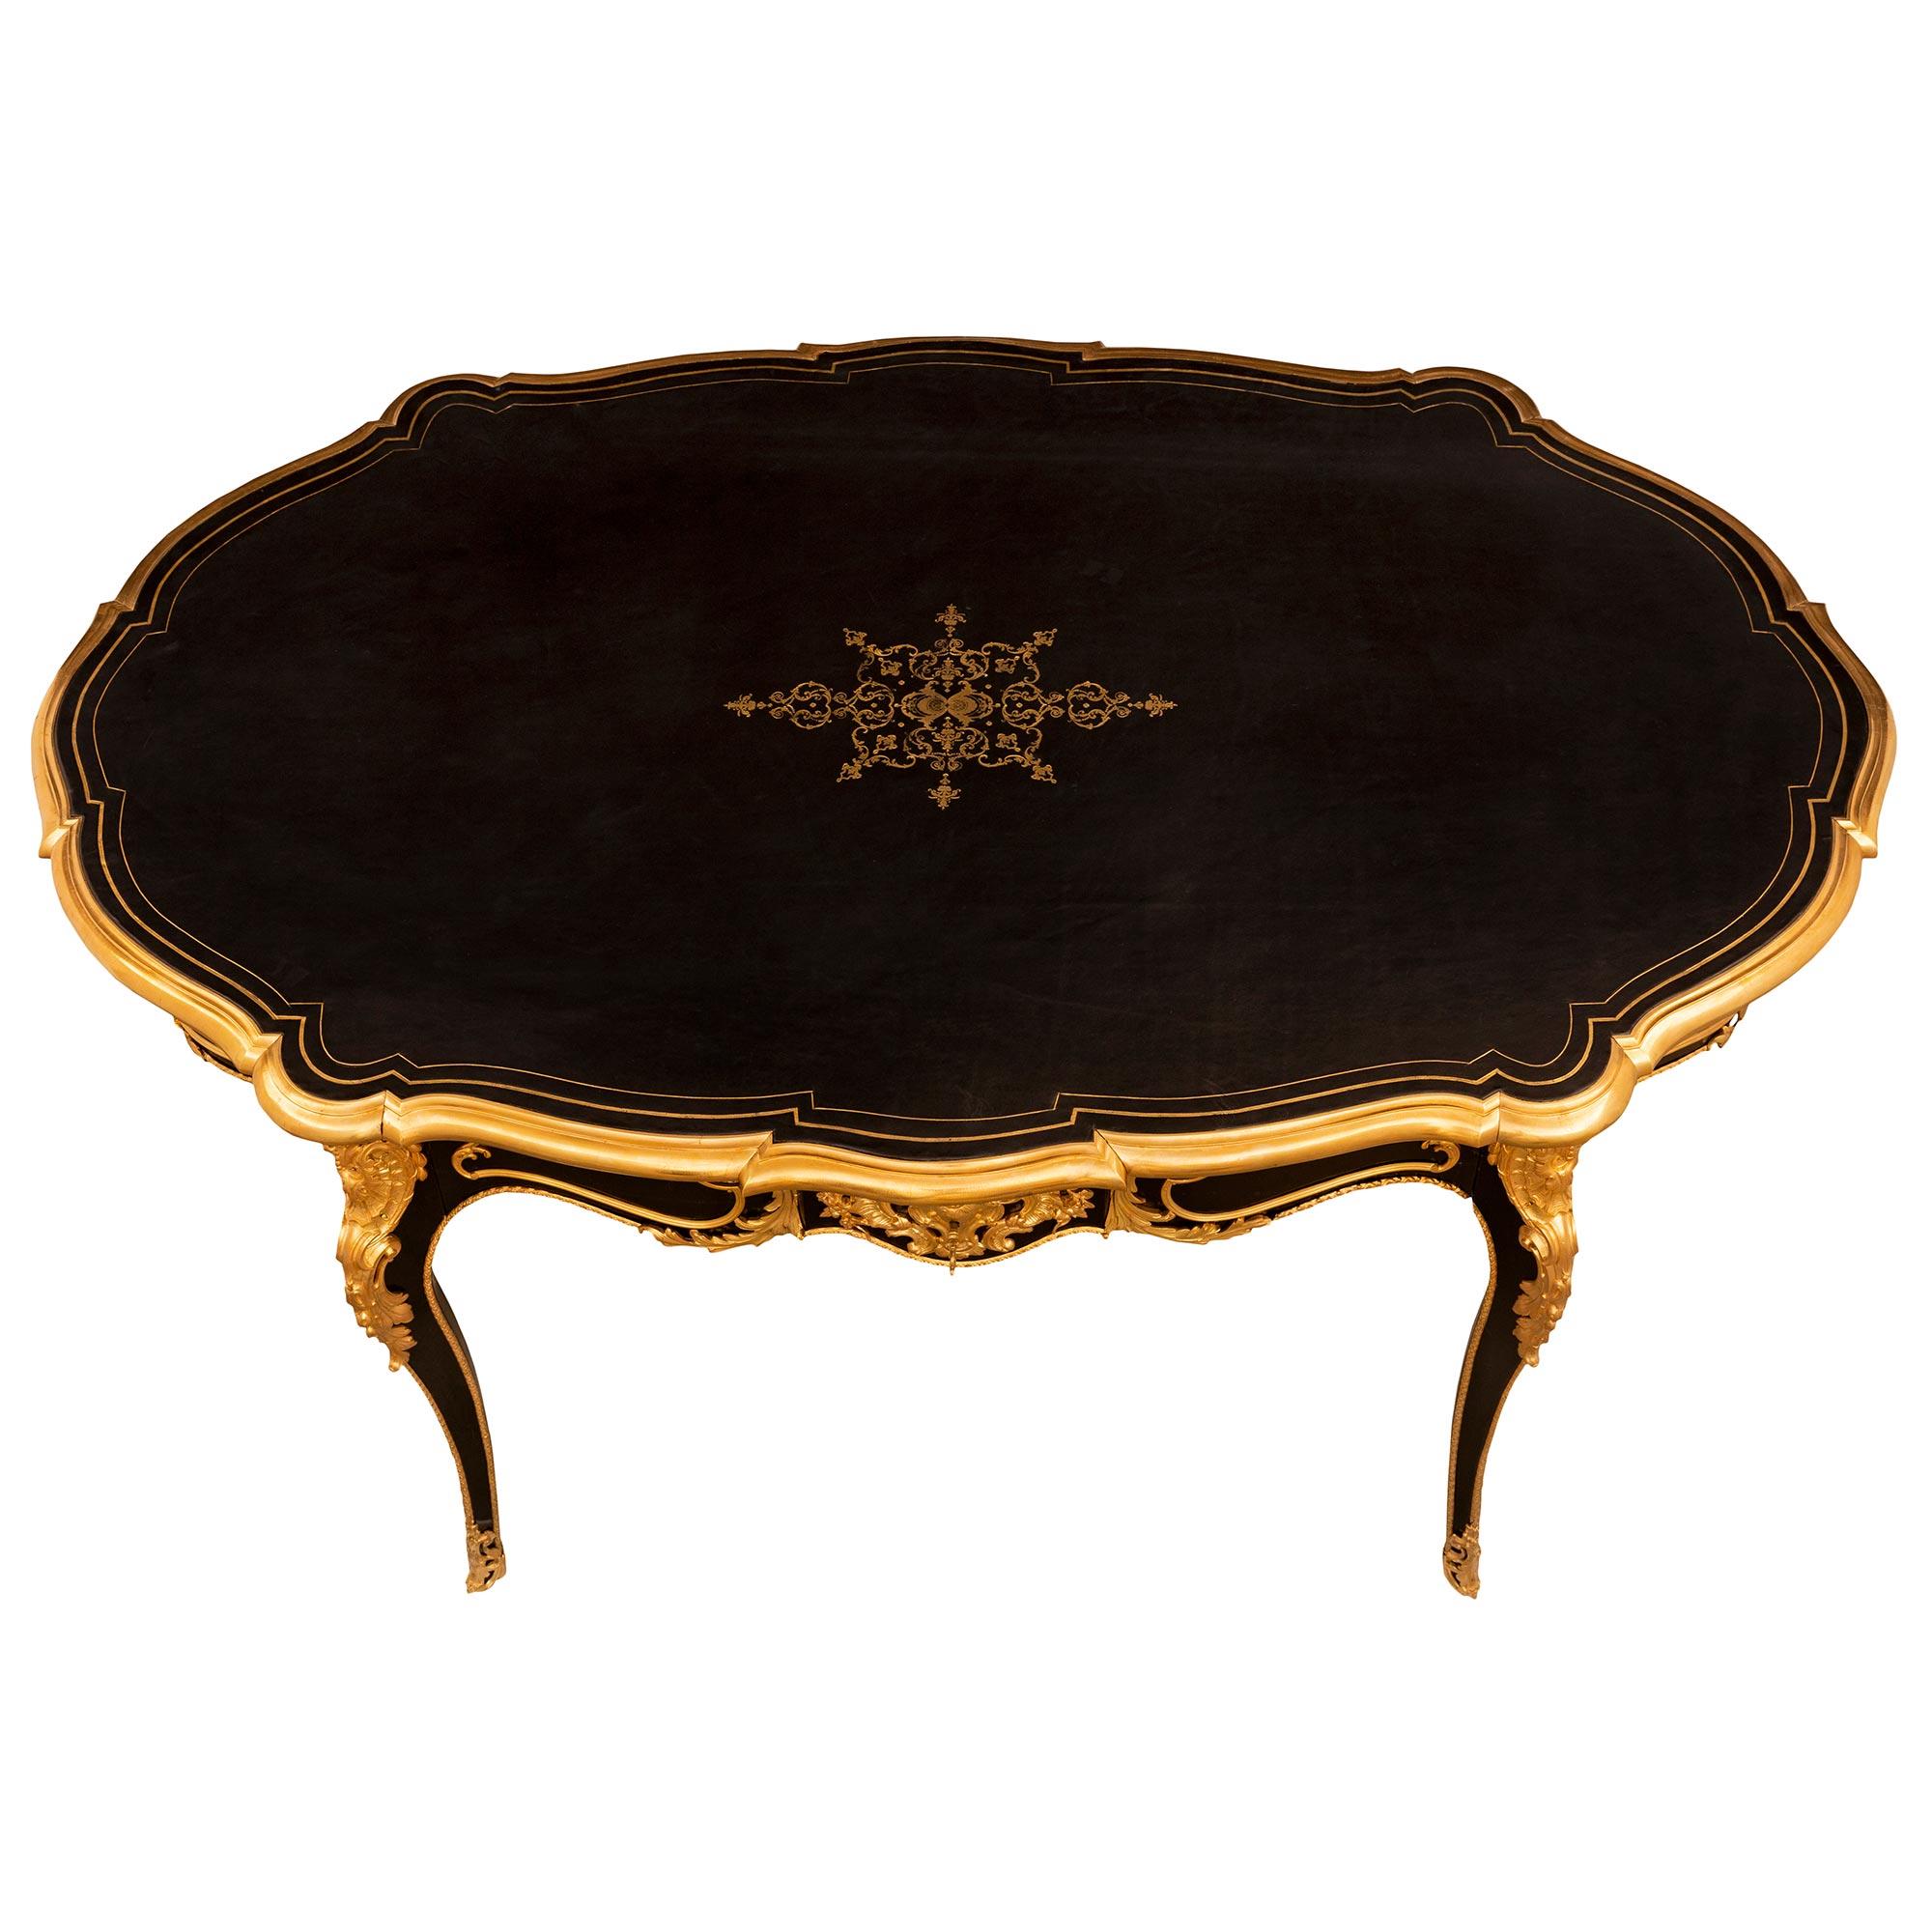 Eine sehr elegante und sehr hohe Qualität Französisch 19. Jahrhundert Louis XV st. Napoleon III Periode Ebenholz und Ormolu Mitte Tisch / Schreibtisch. Der Tisch wird von sehr schlanken Cabriole Beine mit exquisiten durchbrochenen ausgestattet